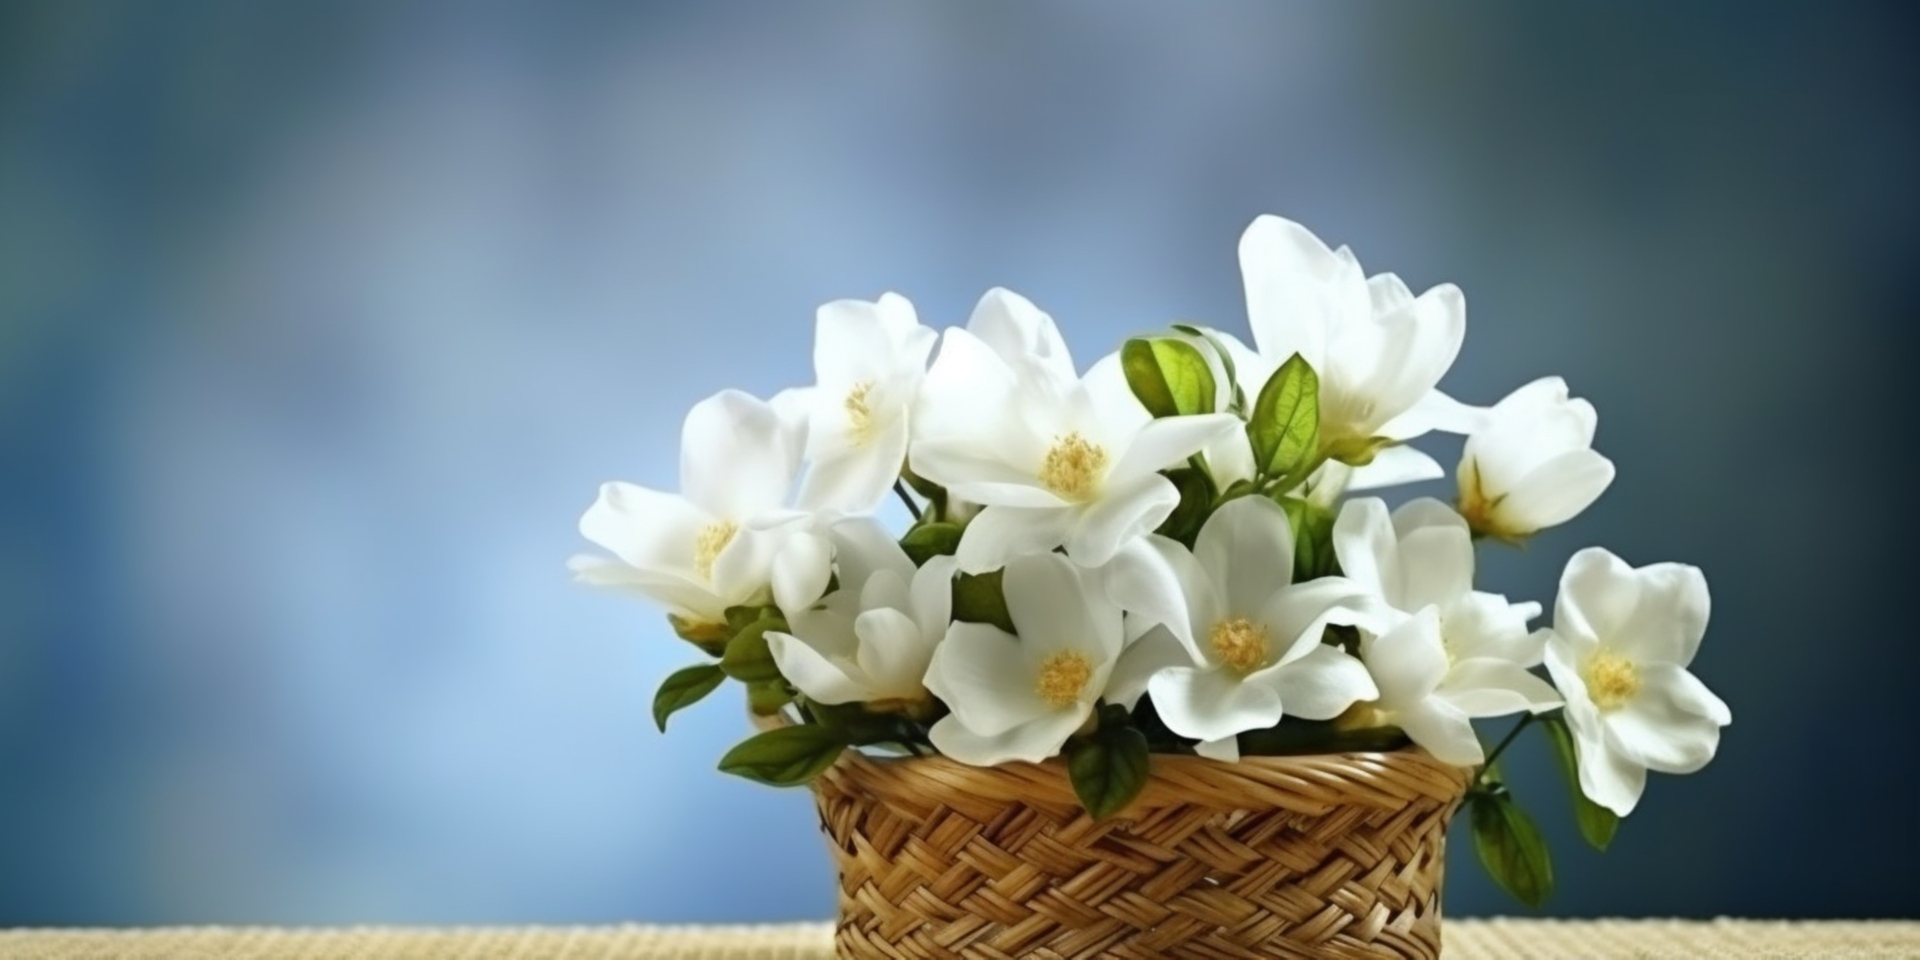 To urocze zdjęcie przedstawia białe kwiatuszki doniczkowe w pełnym rozkwicie. Ich delikatne płatki i subtelny aromat sprawiają, że są one idealne do ozdabiania wnętrz.